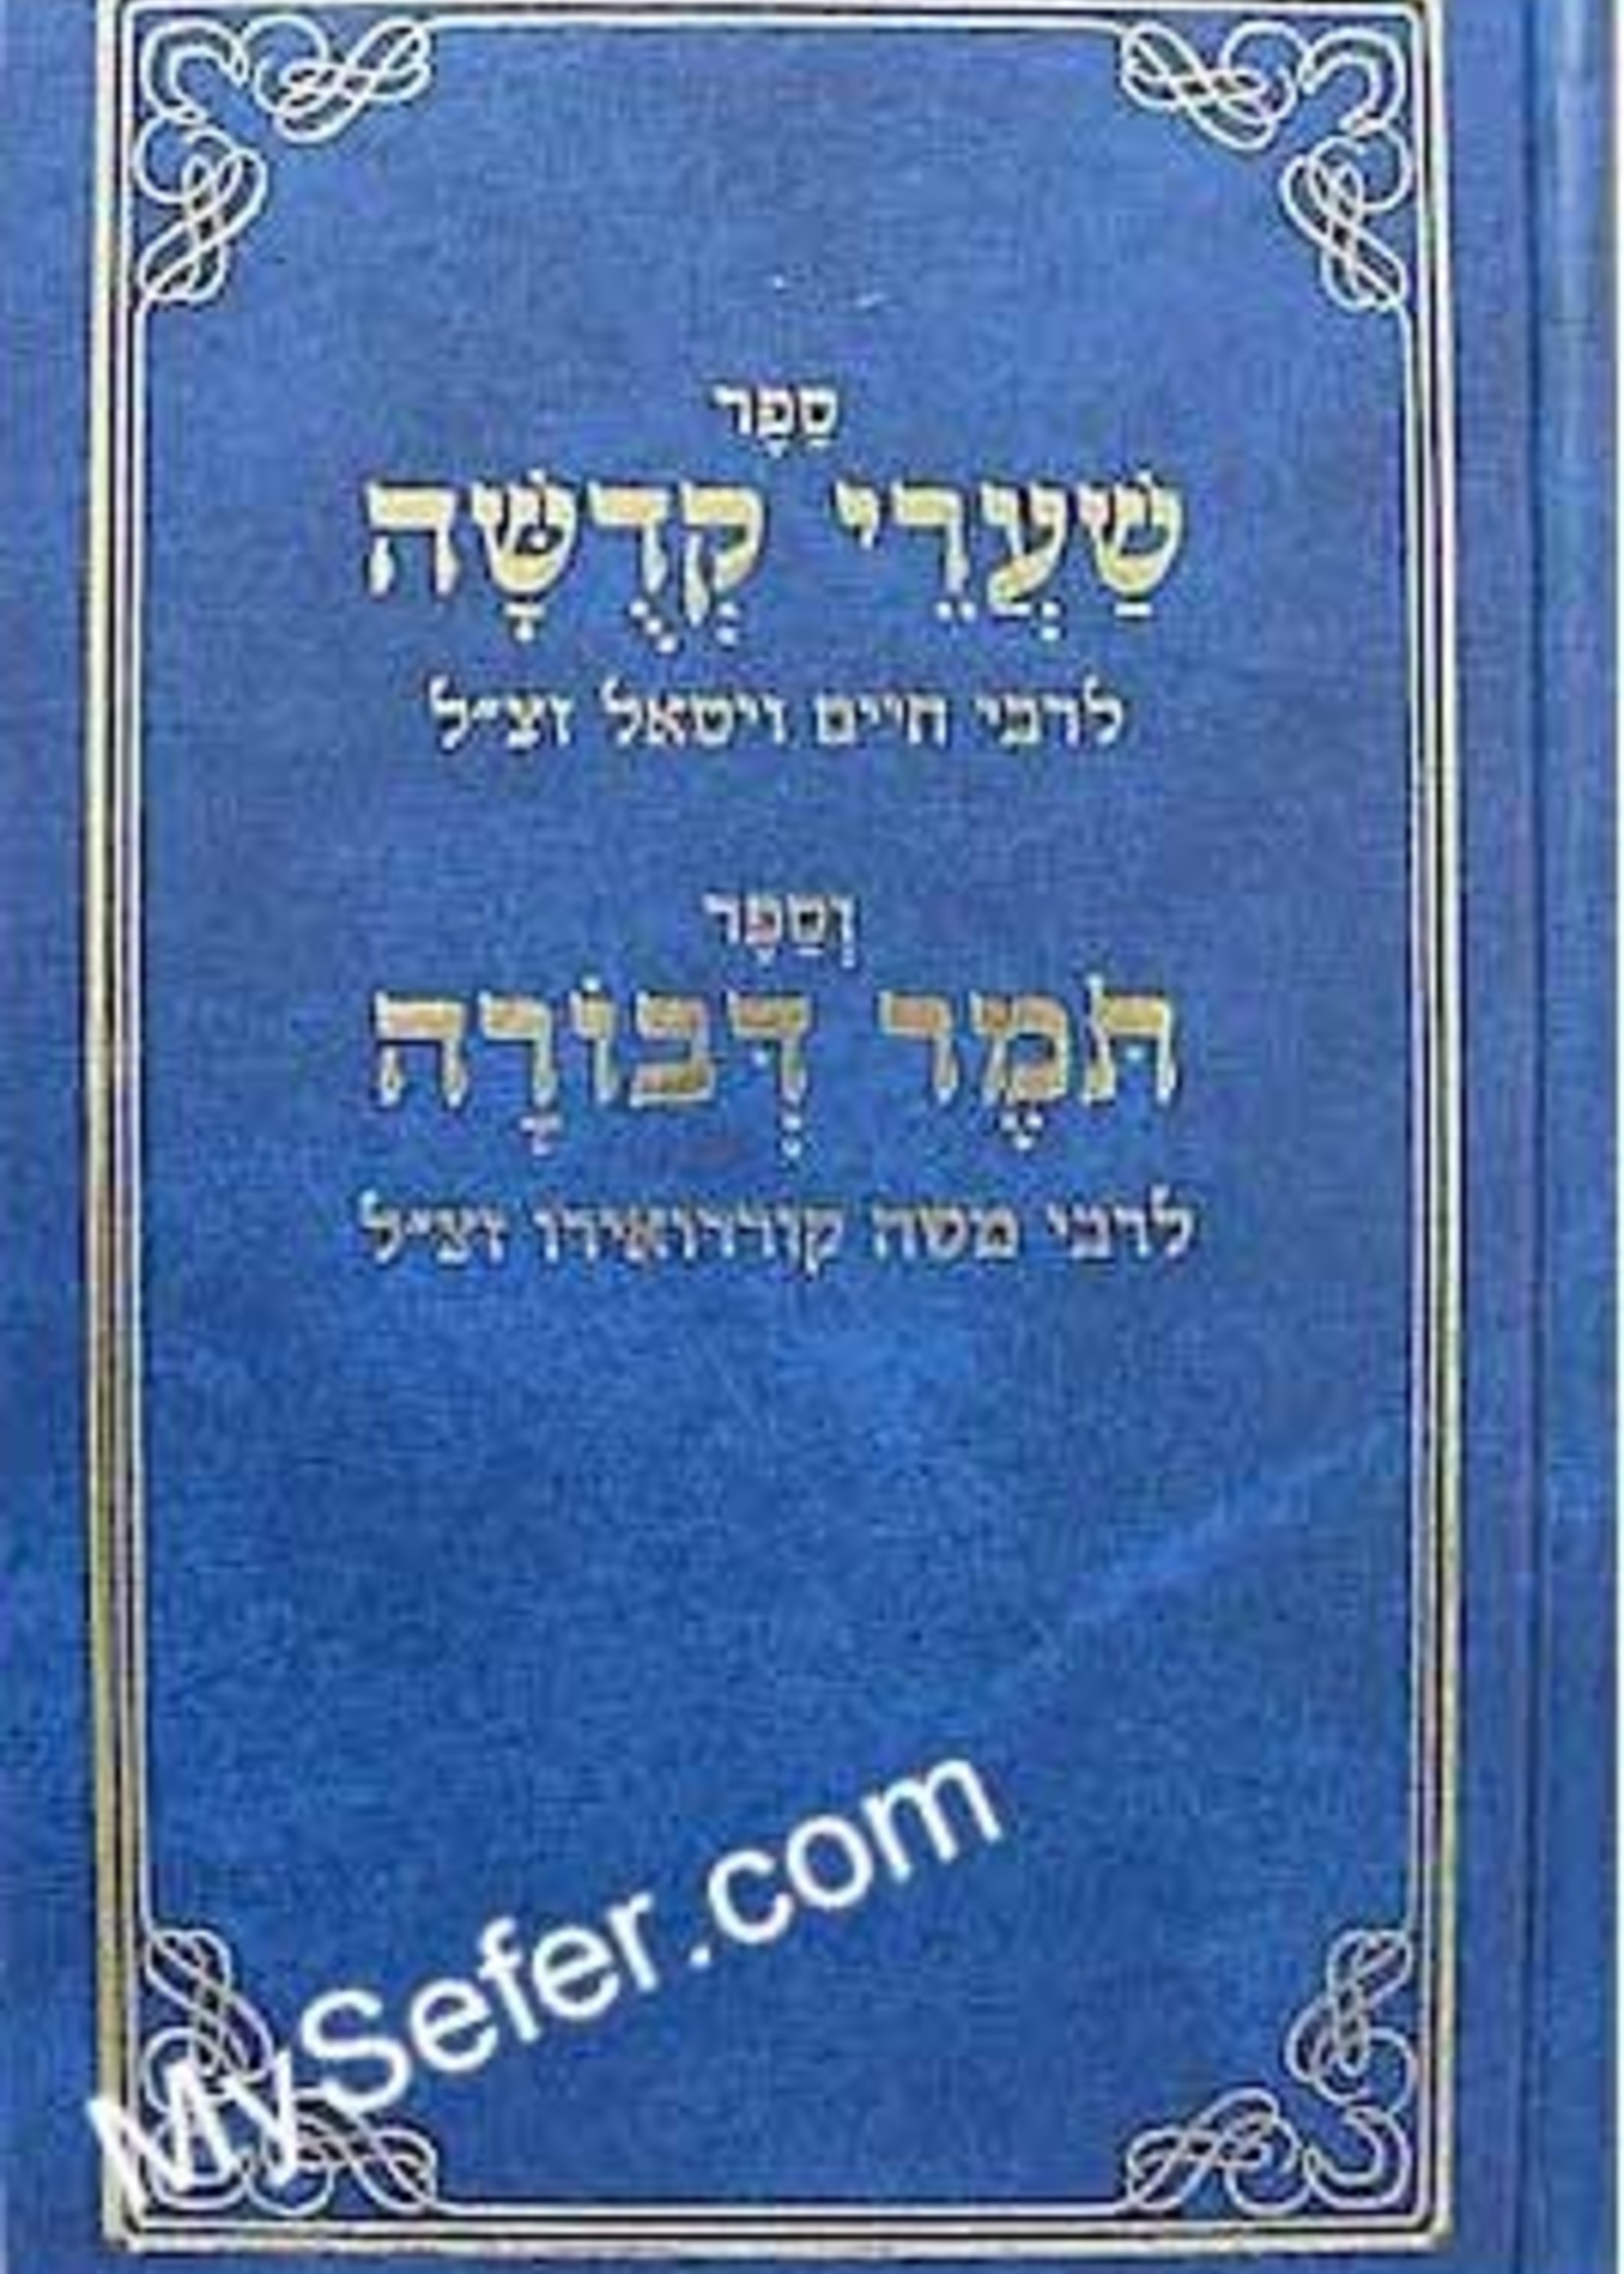 Shaarei Kedusha & Tomer Devorah-(Rabbi Chaim Vital & Rabbi Moshe Cordovero)